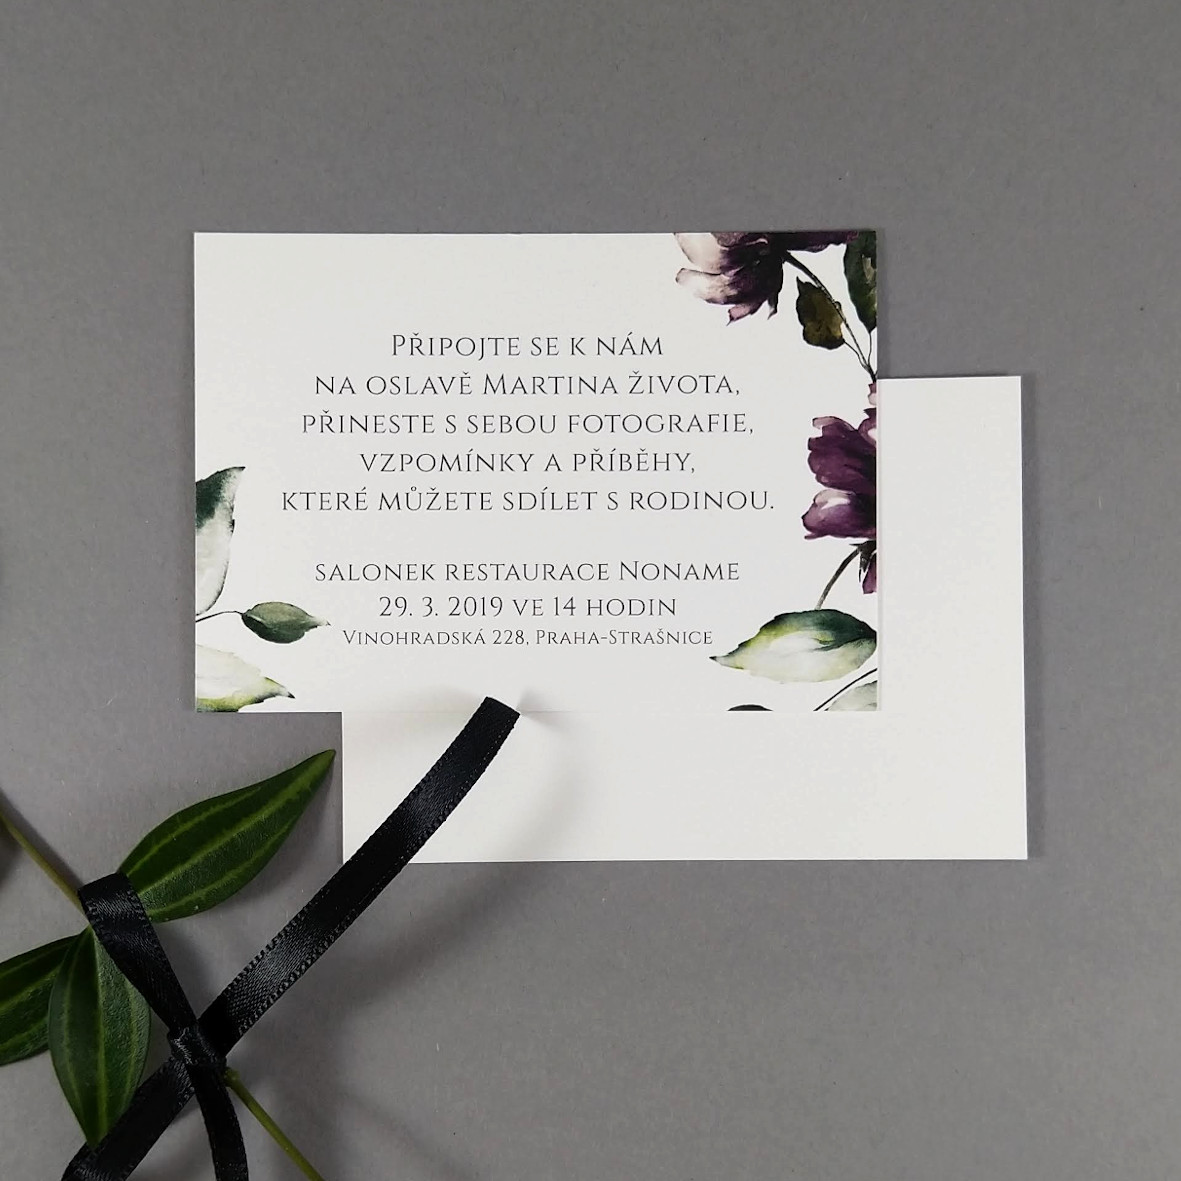 Pozvánka, informační karta – s motivem vínově červených pivoněk, formát 100 × 70 mm, jednostranná